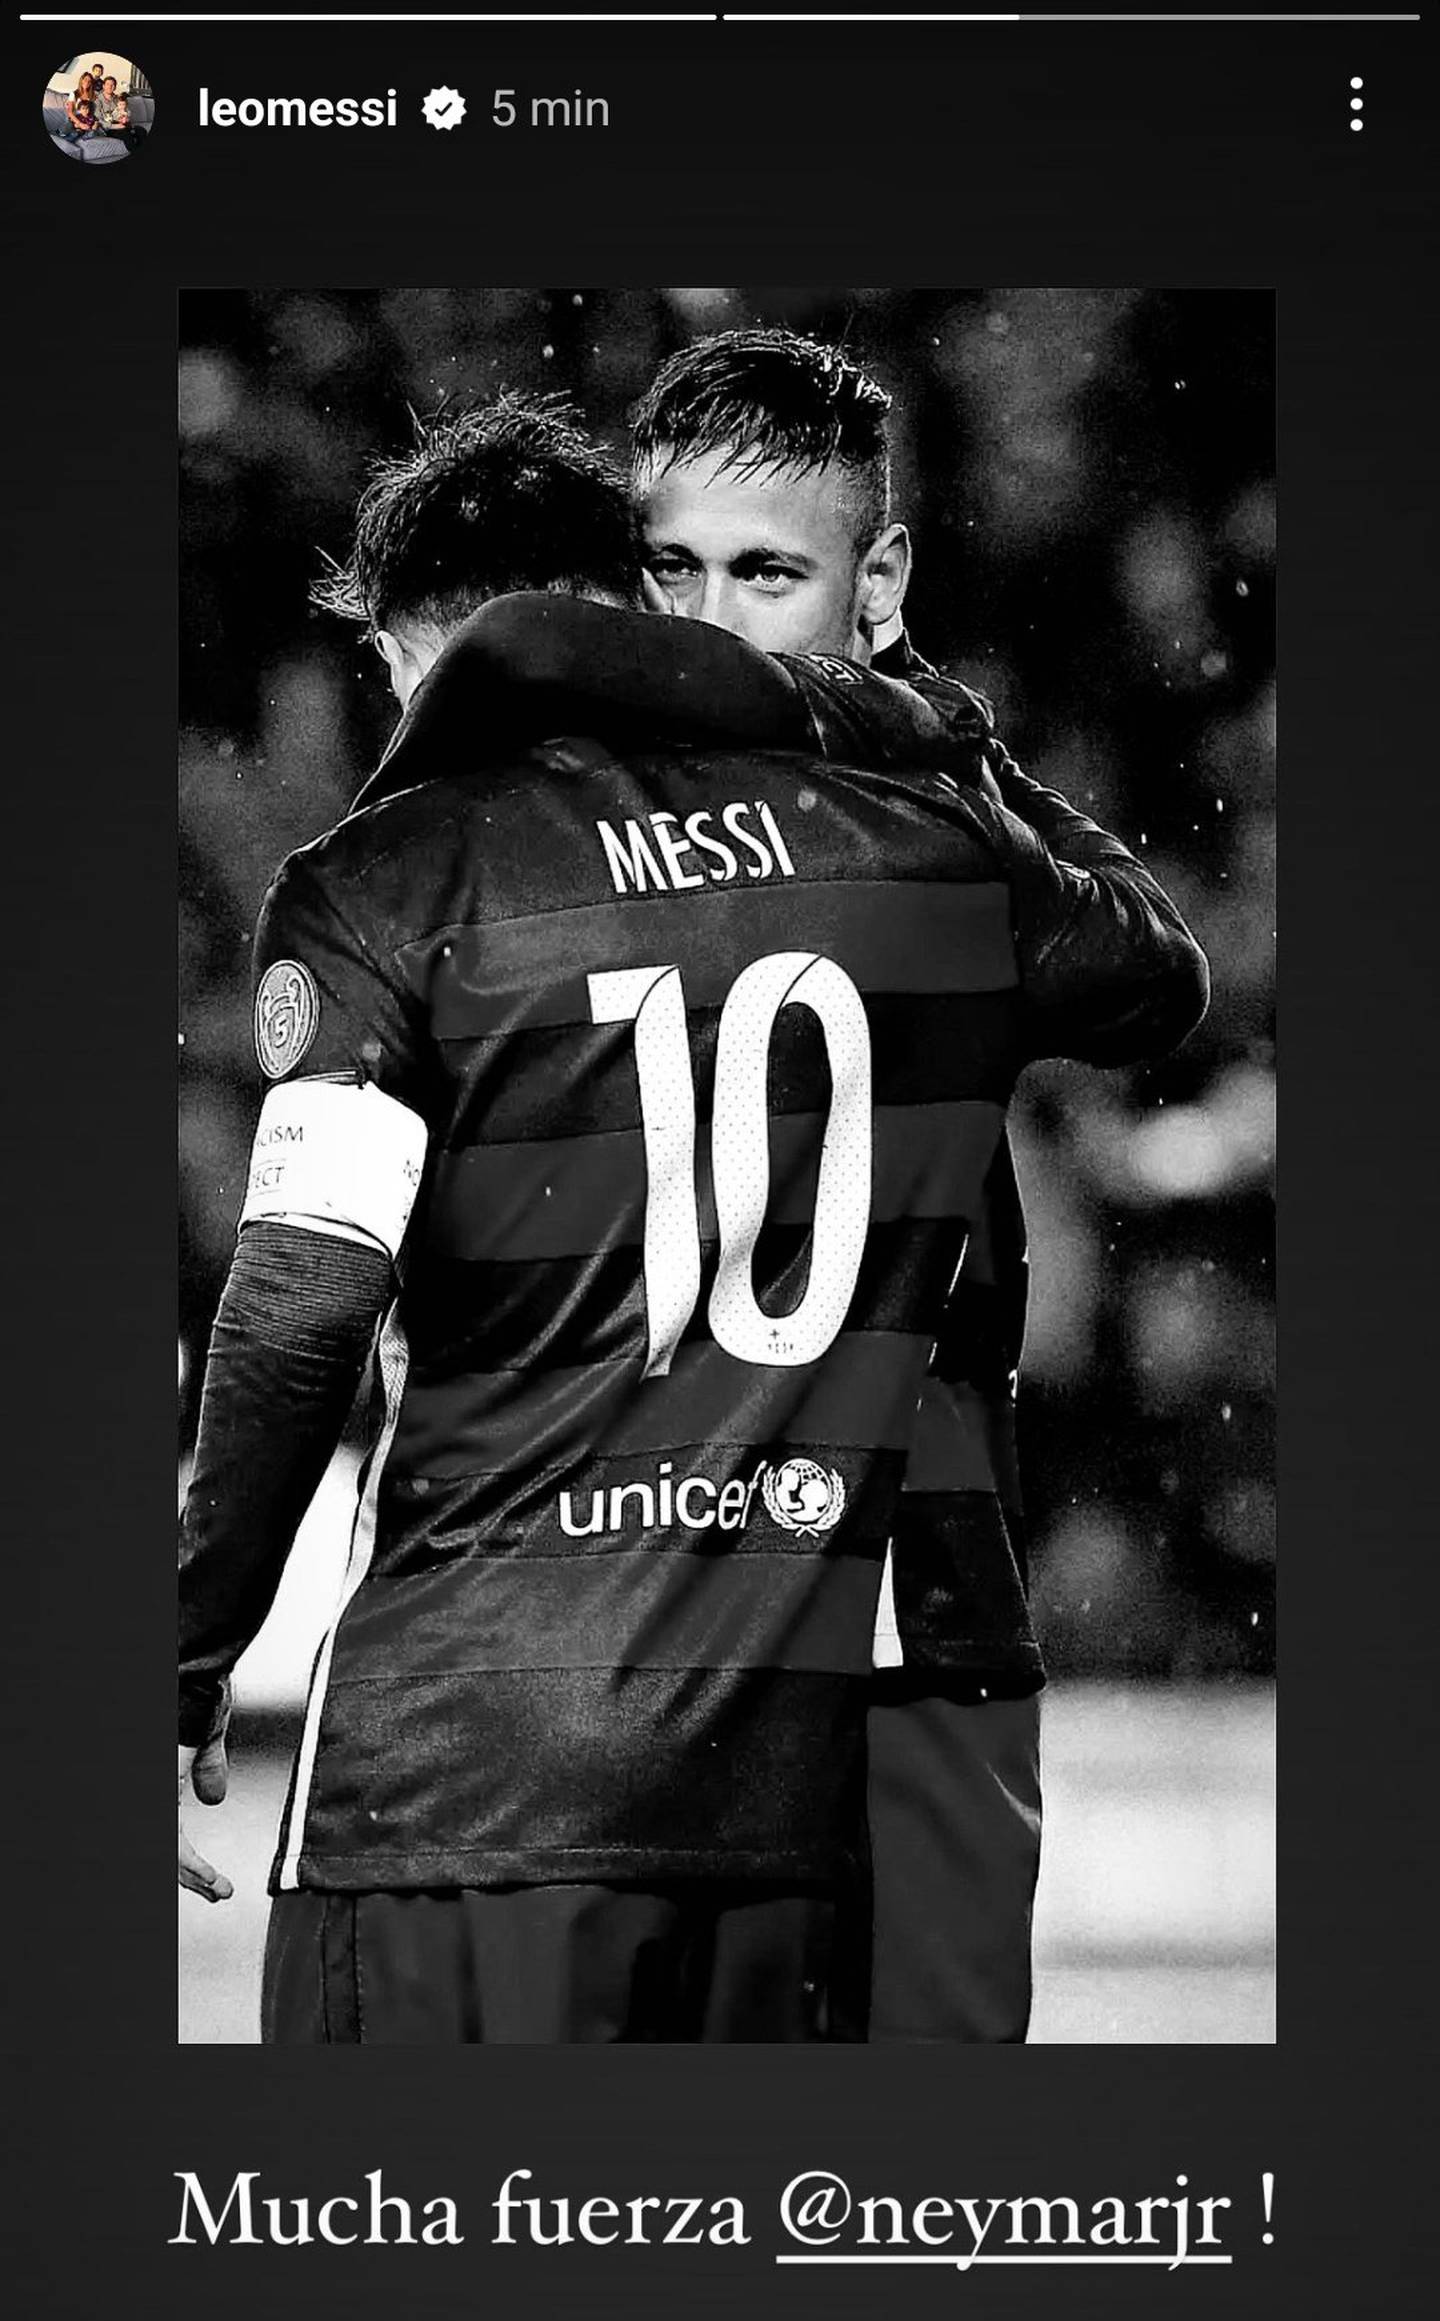 Lionel Messi le deseó mucha fuerza en su lesión a Neymar. Foto: Instagram